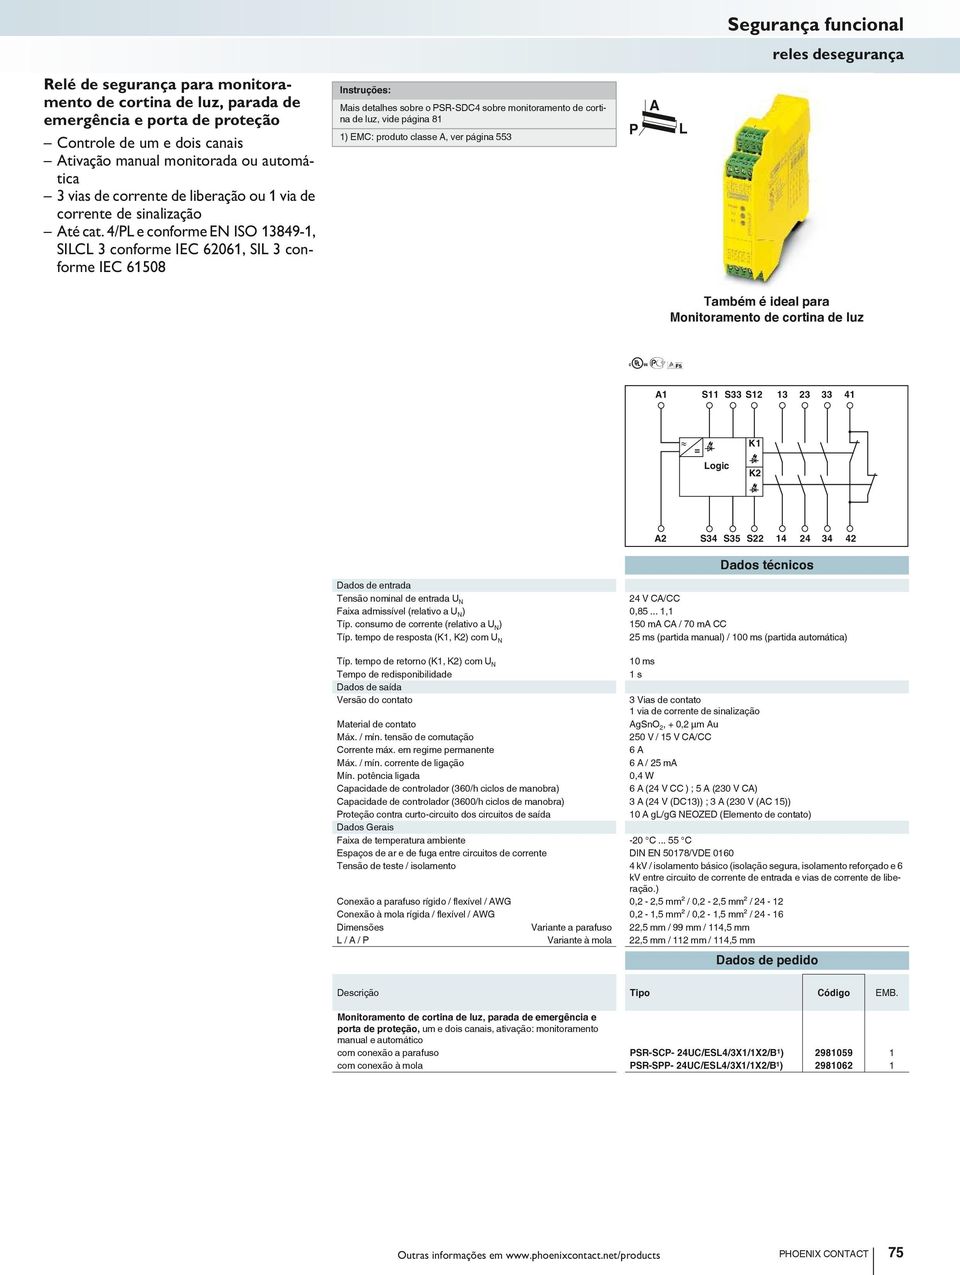 4/ e conforme EN ISO 3849-, SIC 3 conforme IEC 606, SI 3 conforme IEC 6508 Mais detalhes sobre o SR-SDC4 sobre monitoramento de cortina de luz, vide página 8 ) EMC: produto classe, ver página 553